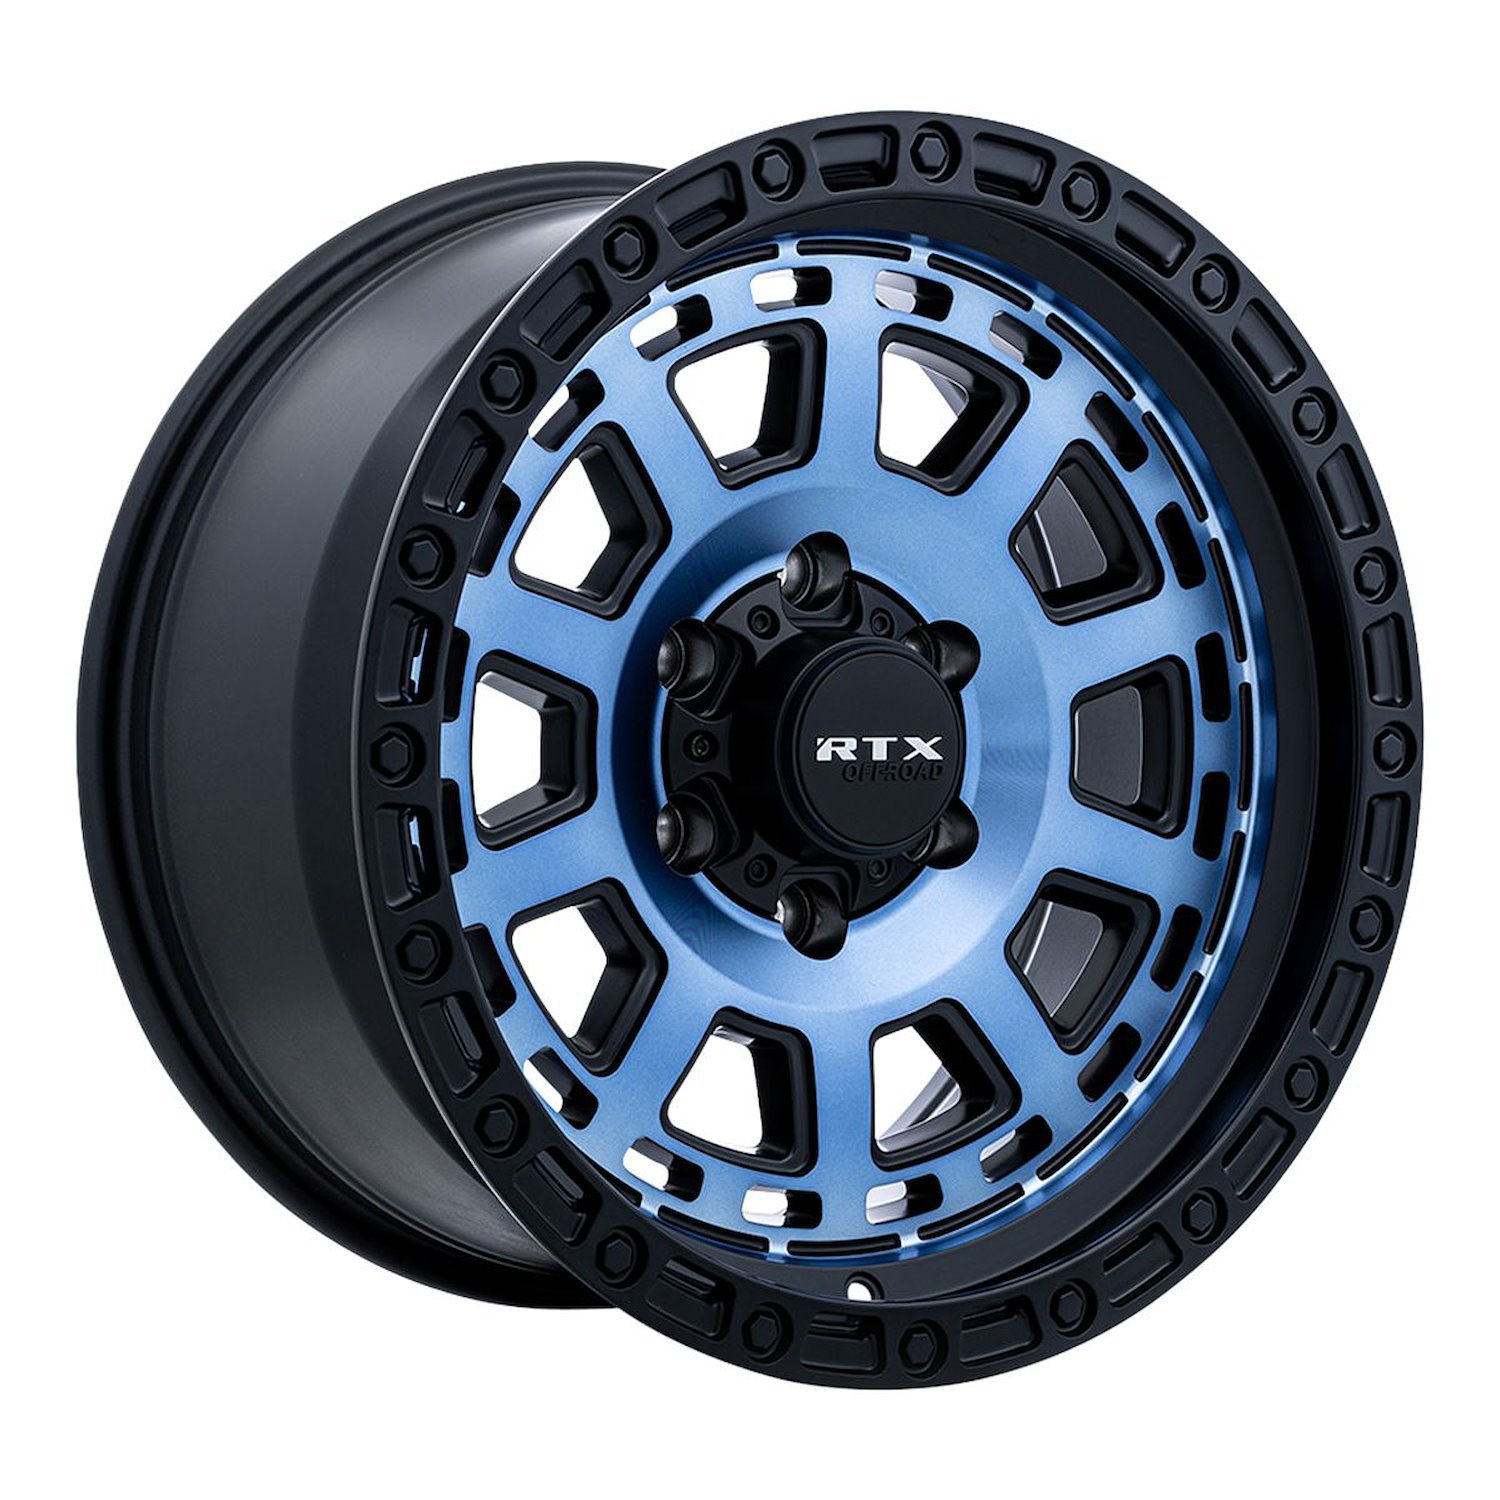 163802 Off-Road Series Titan Wheel [Size: 18" x 9"] Midnight Blue w/ Black Lip Finish